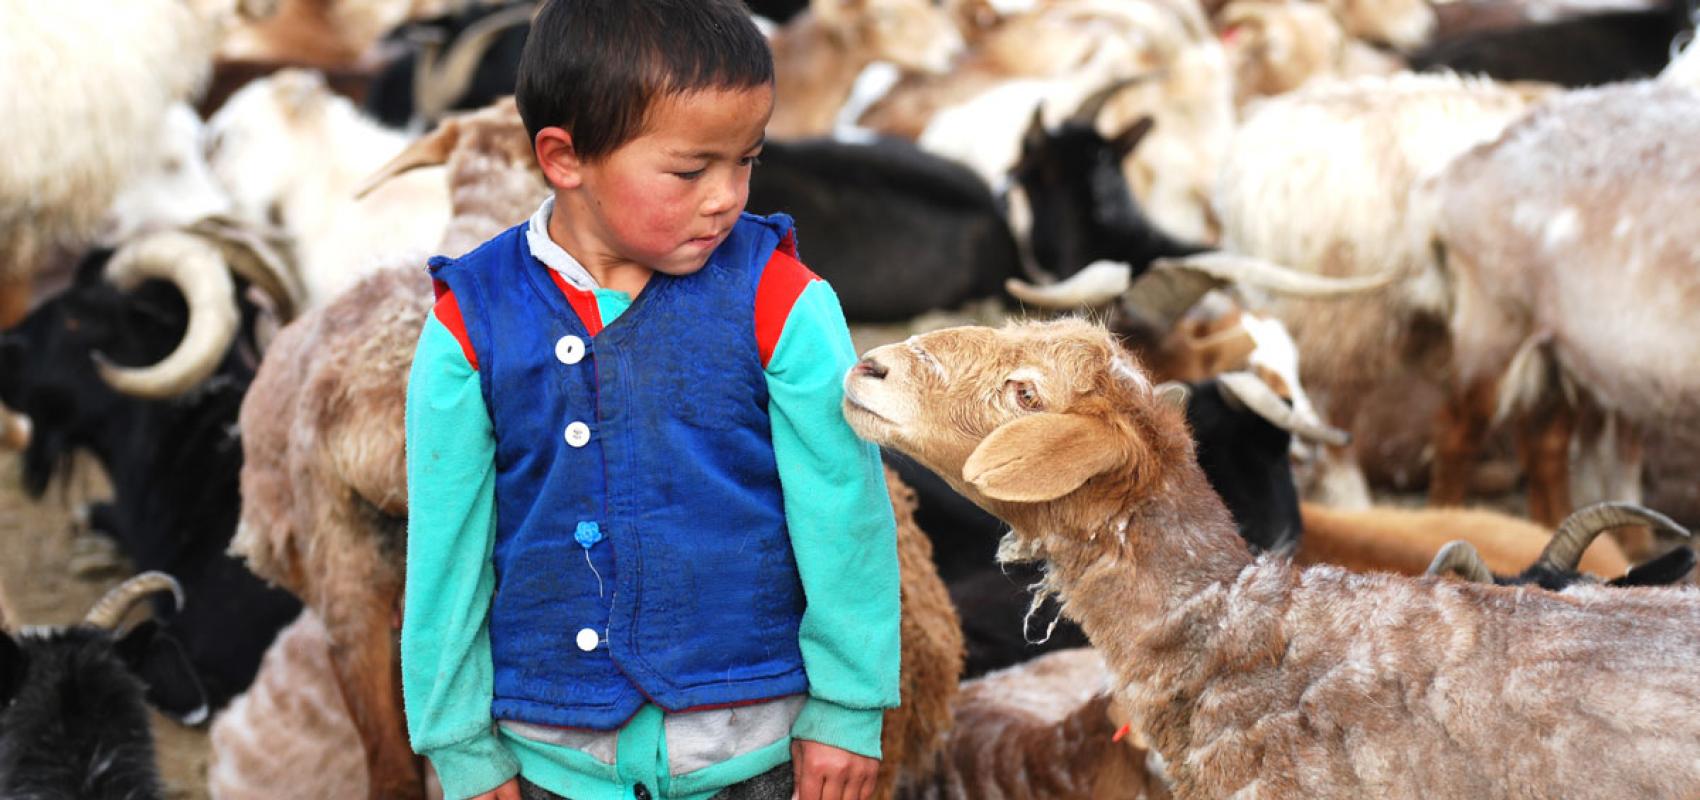  Enfant et mouton se regardant dans les yeux à l'occasion du rassemblement des brebis sur le campement pour la traite quotidienne, Mongolie, province de Bayan-Ölgii, juillet 2018 -  - Charlotte Marchina